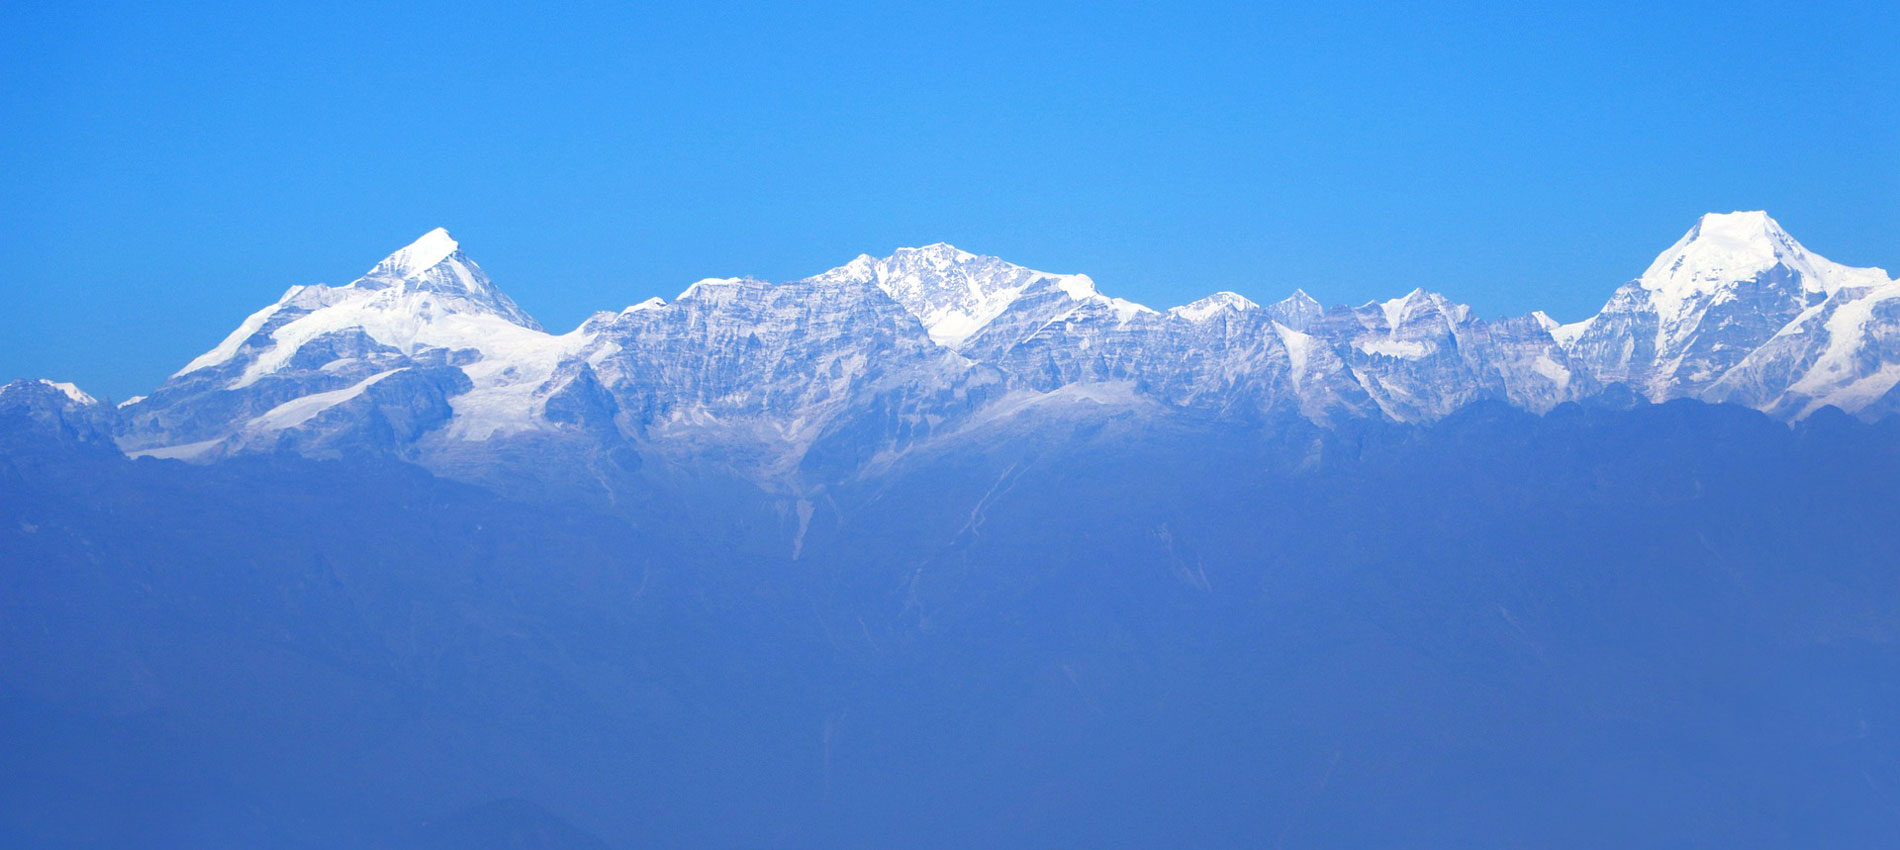 Kathmandu-Nagarkot Hike